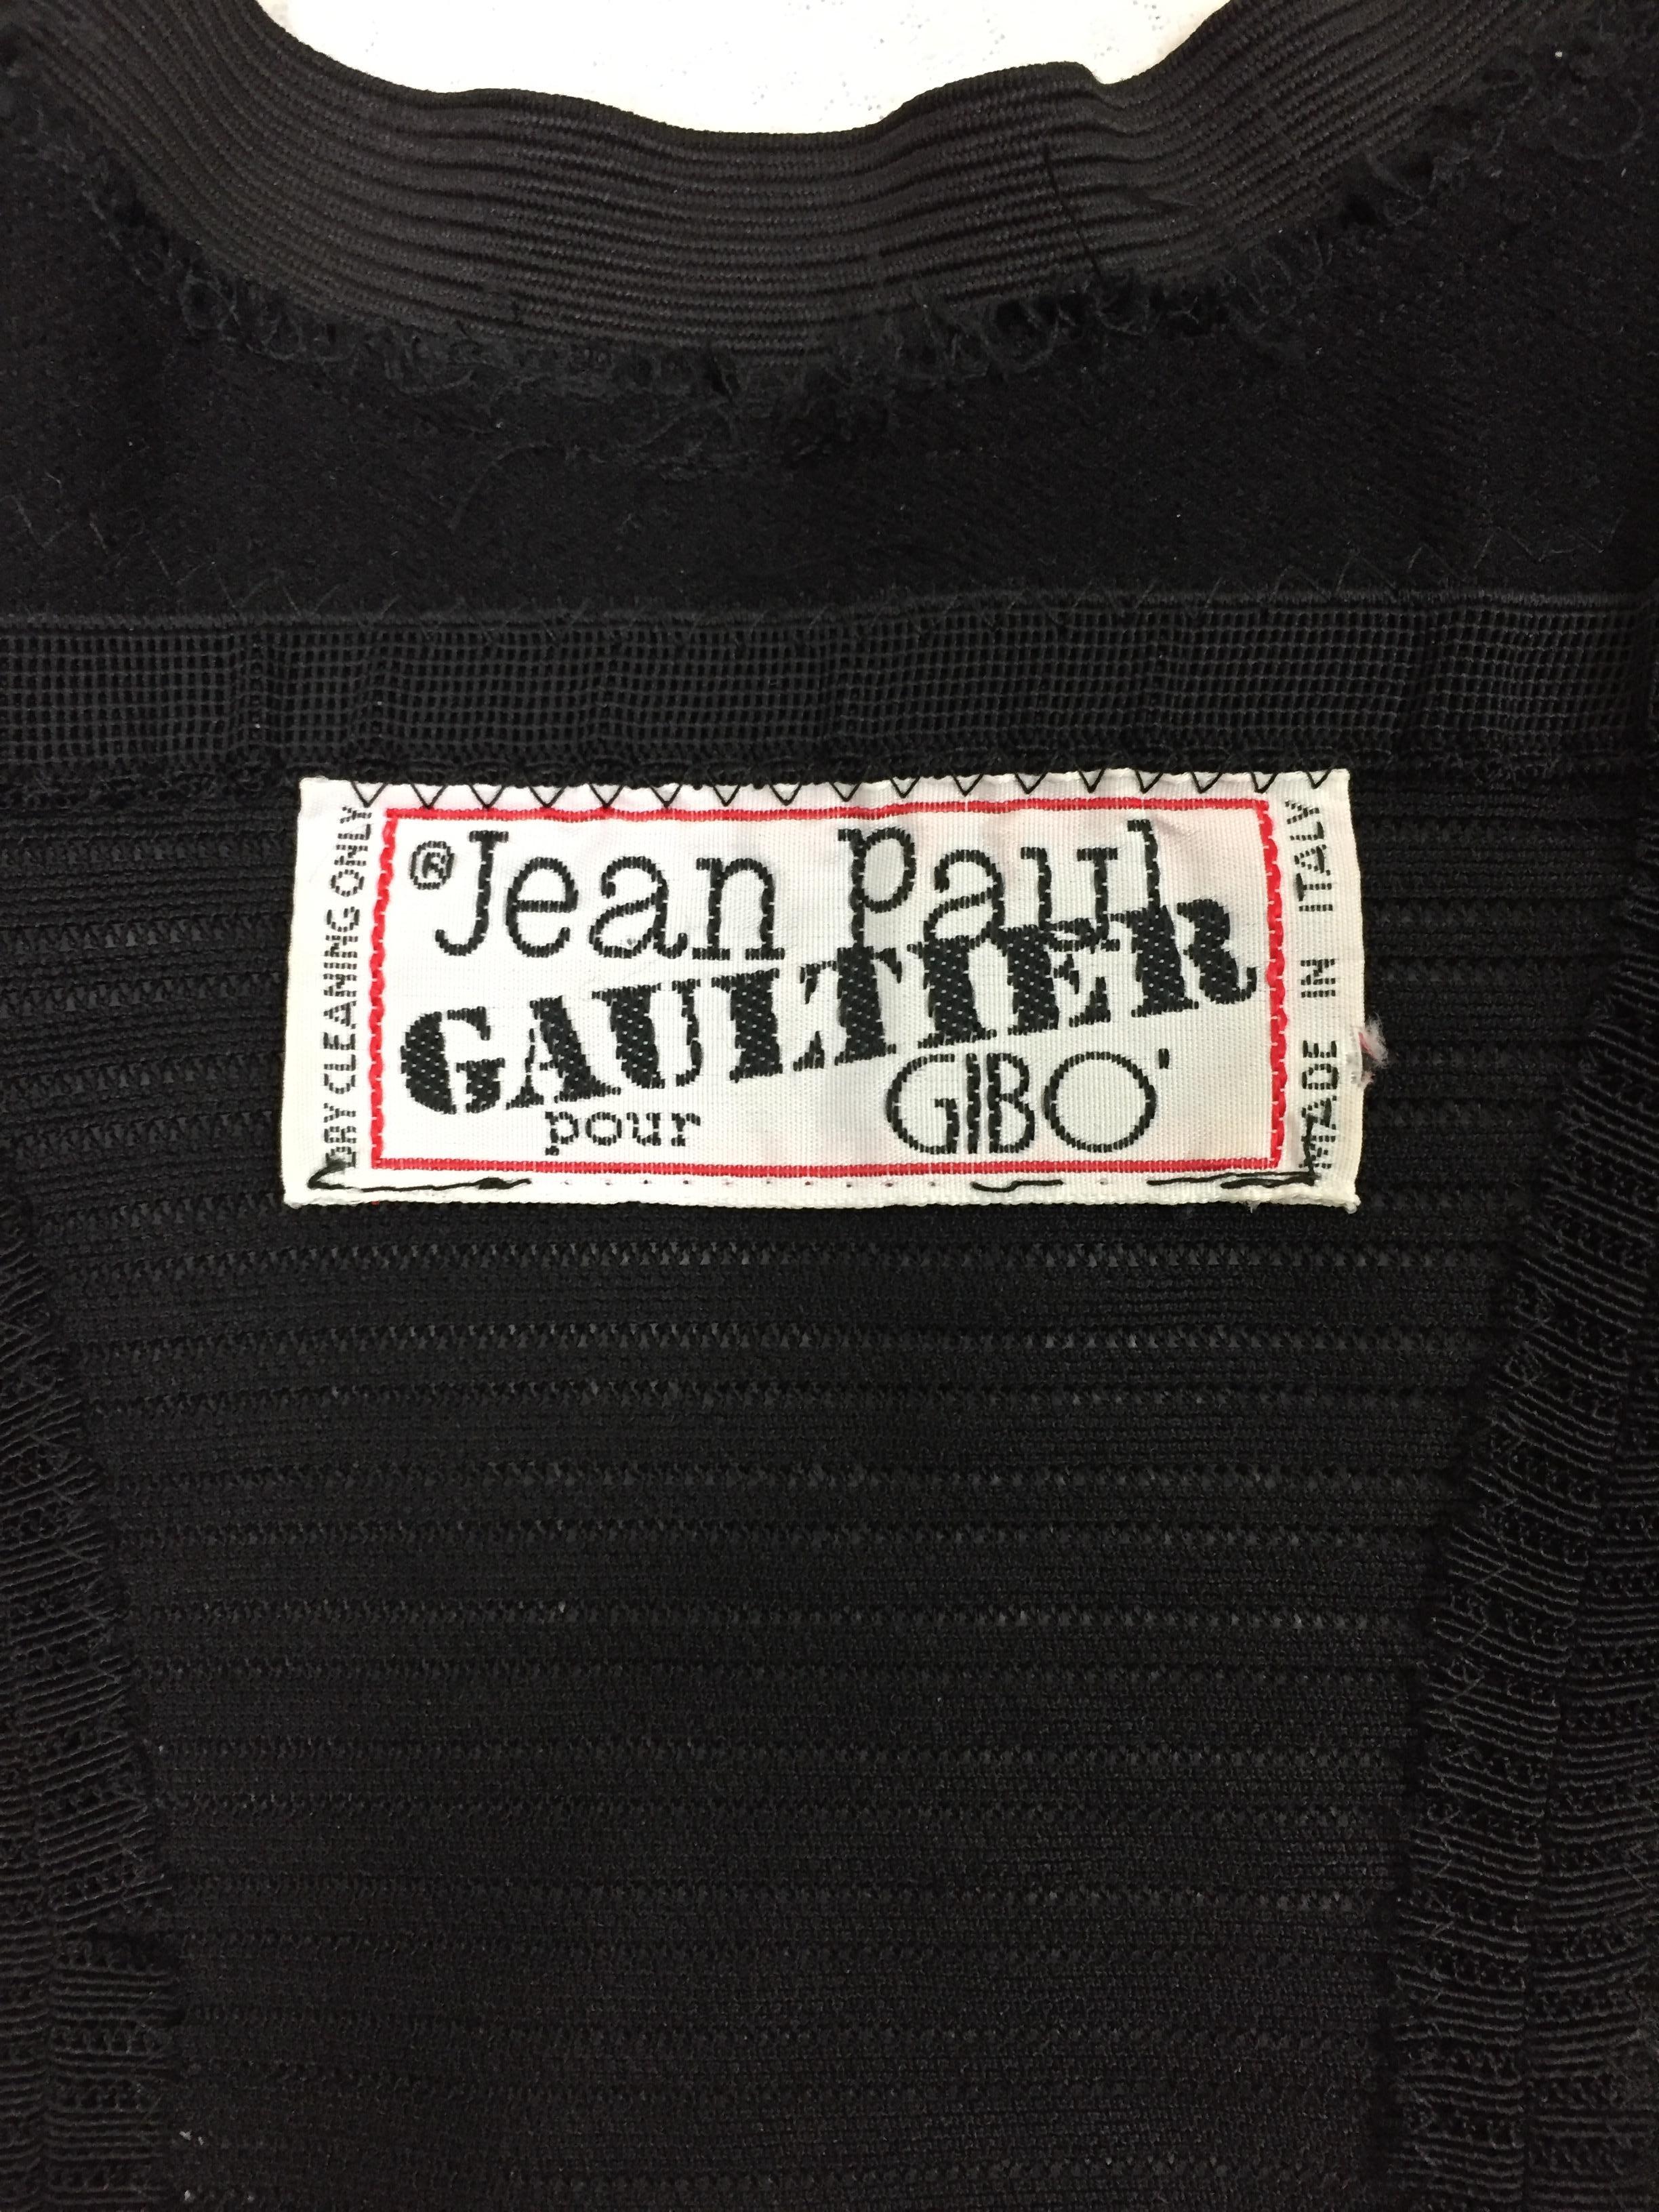 1987 Jean Paul Gaultier Black Cone Bra Bustier Crop Top & Corset Skirt Set 1